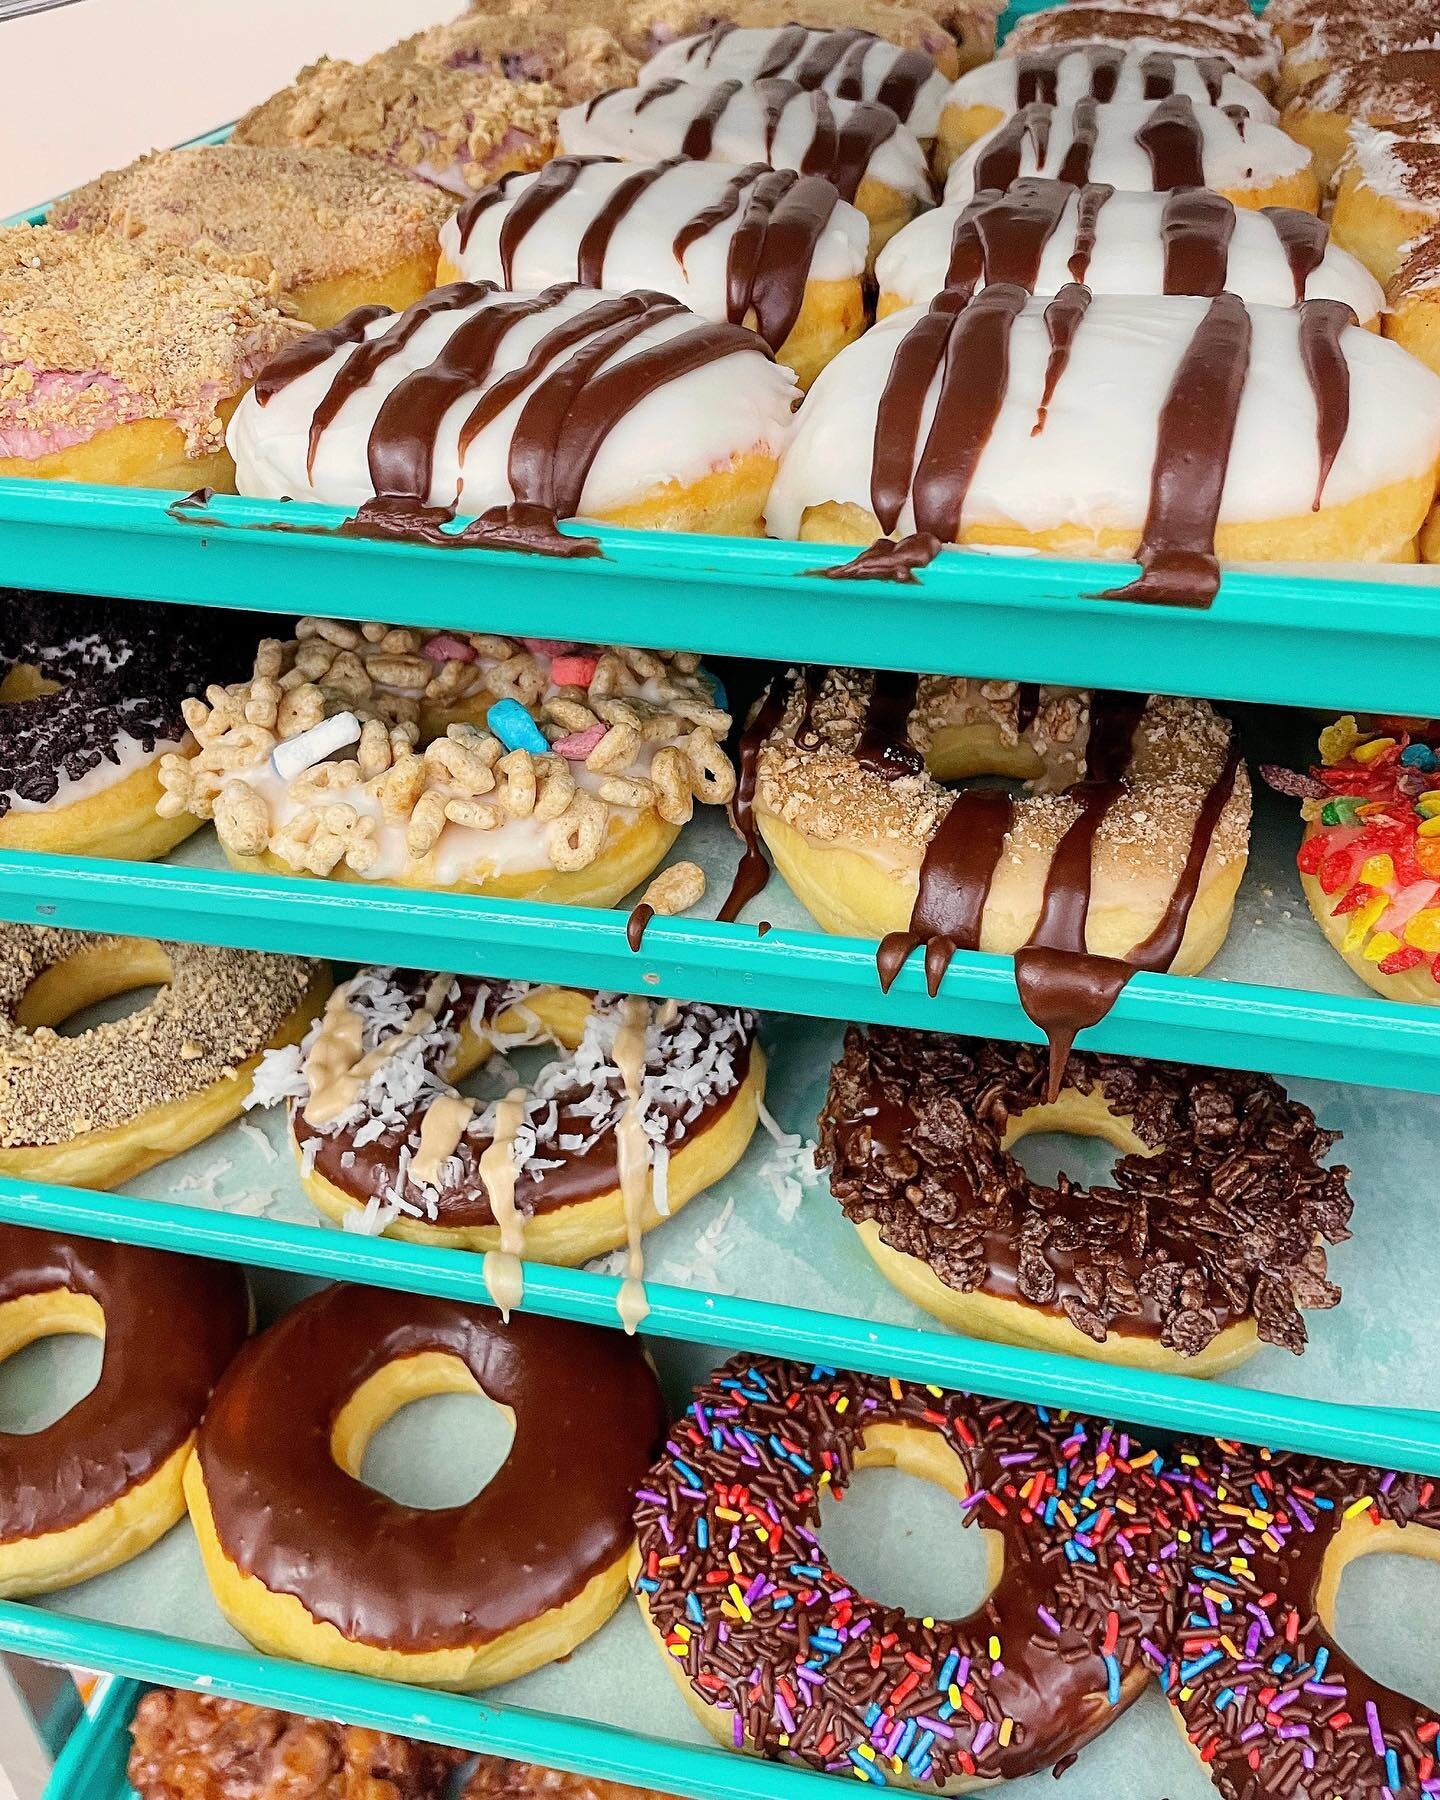 Happy Saturday! 

#hammerdonuts #freshdonuts #handmadedonuts #donuts #doughnuts #donutshop #donutandcoffee #fooddelivery #grubhub #cakedonuts #yeastdonuts #downtownlafayette #sprinkledonut #glazeddonuts #filleddonuts  #ドーナツ #甜甜圈 #도넛